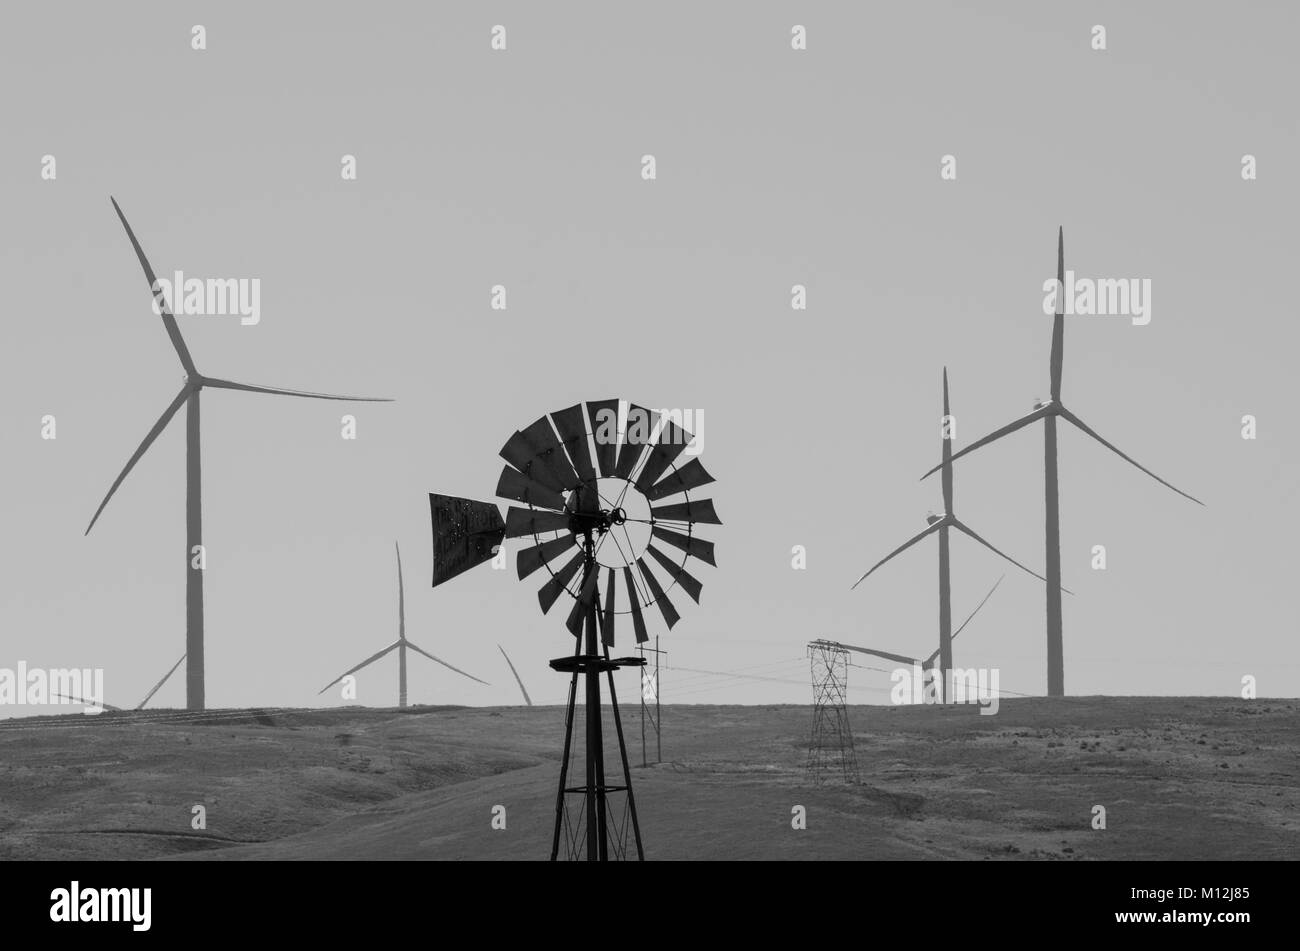 Un mulino a vento vintage fornisce un contrasto di un moderno parco eolico con il gigante delle pale della turbina Foto Stock